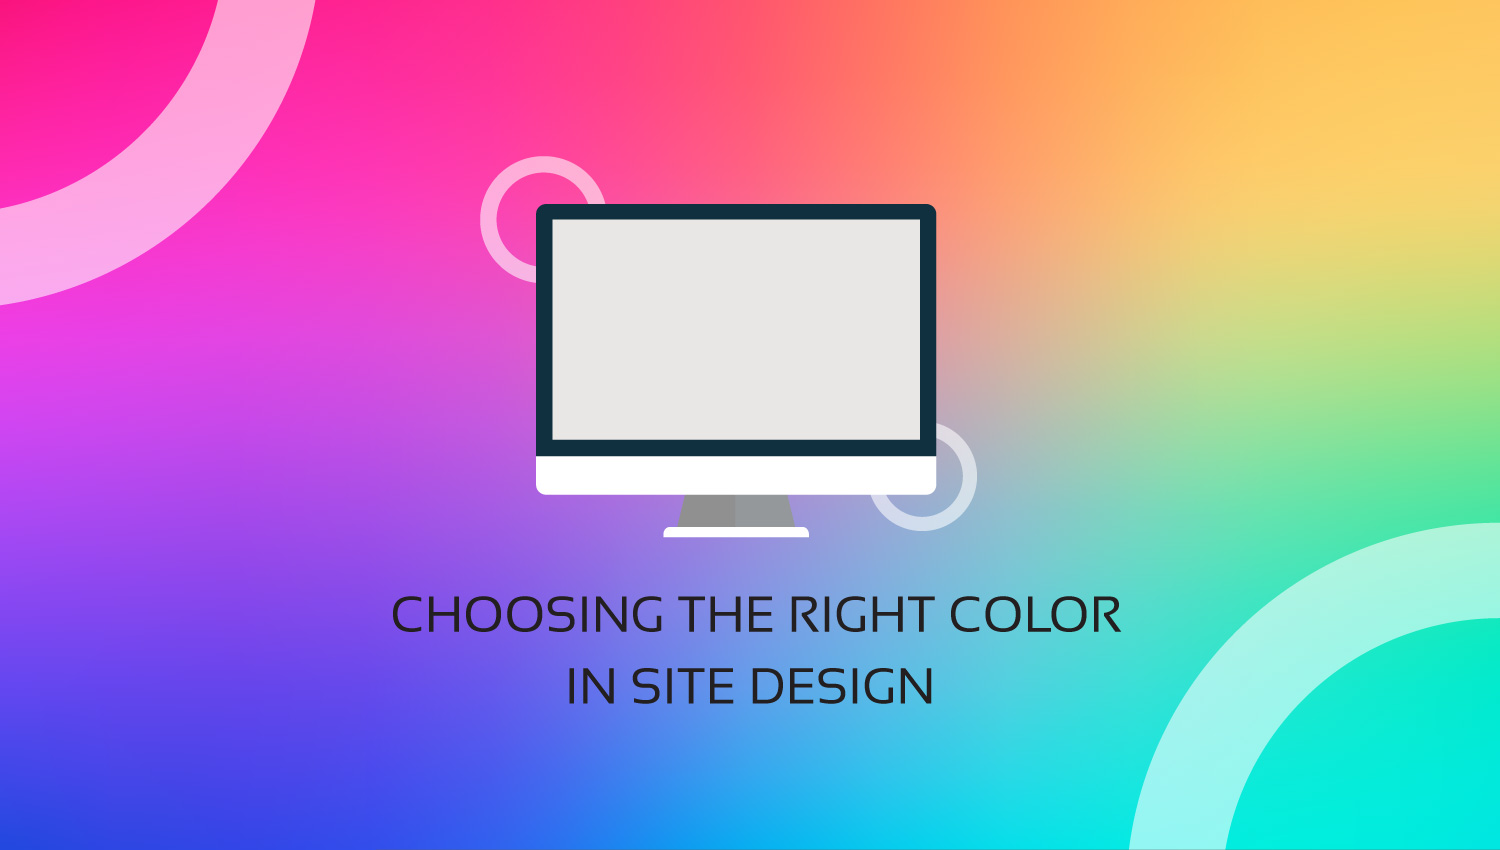 انتخاب رنگ مناسب در طراحی سایت